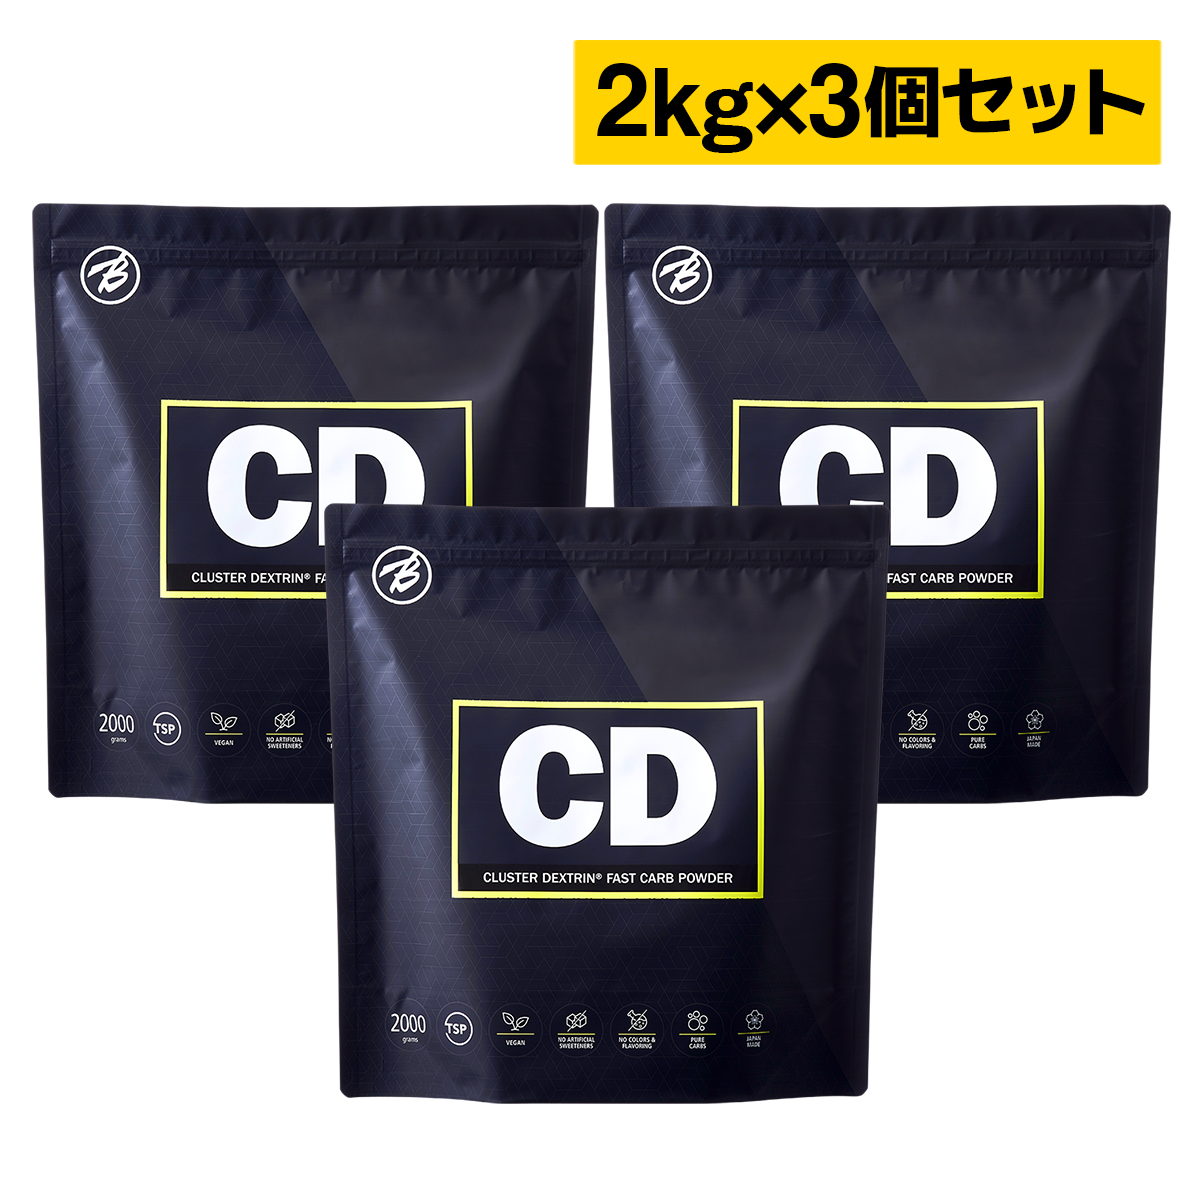 【バルクスポーツ】CD(クラスターデキストリン 国産)2kg×お得な3個セット 約270食分 福袋 ギフト画像